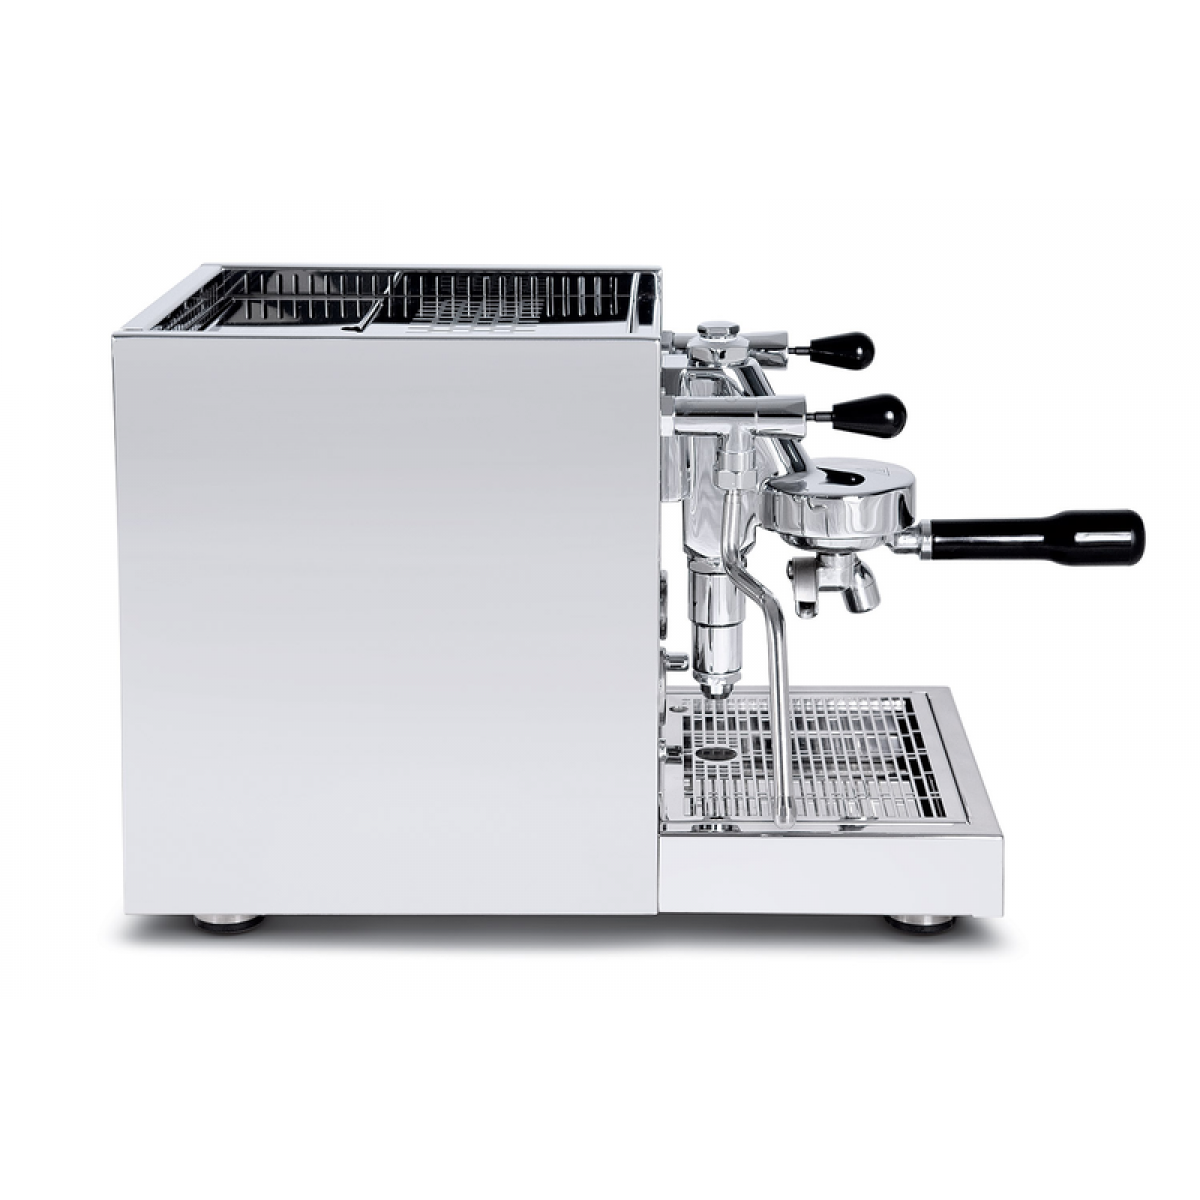 Quick Mill RUBINO 0981 Naz espresso machine special edition